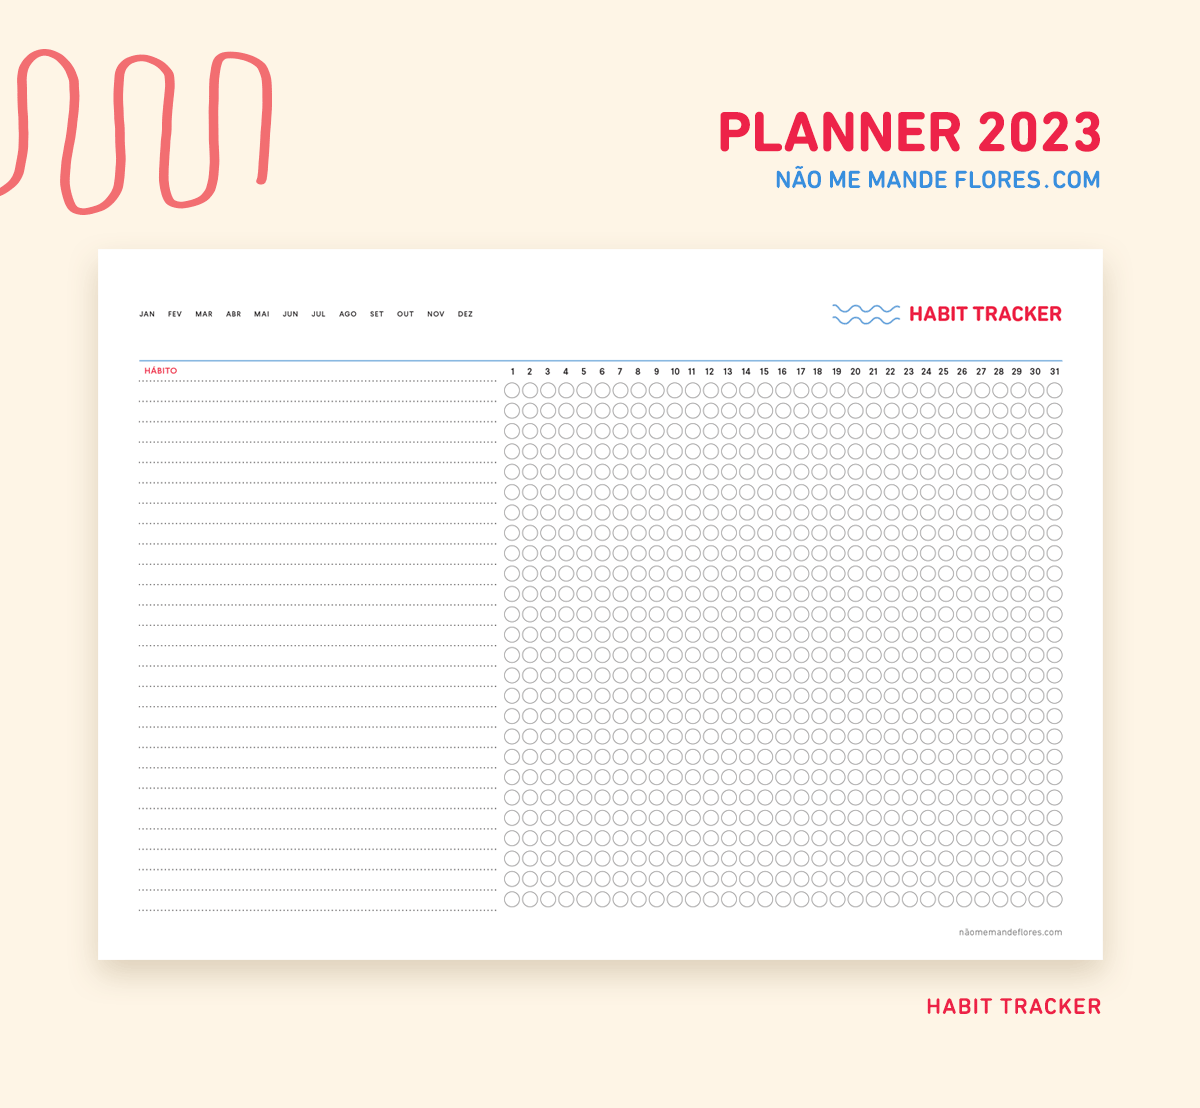 Planner Não Me Mande Flores 2023 - Habit Tracker